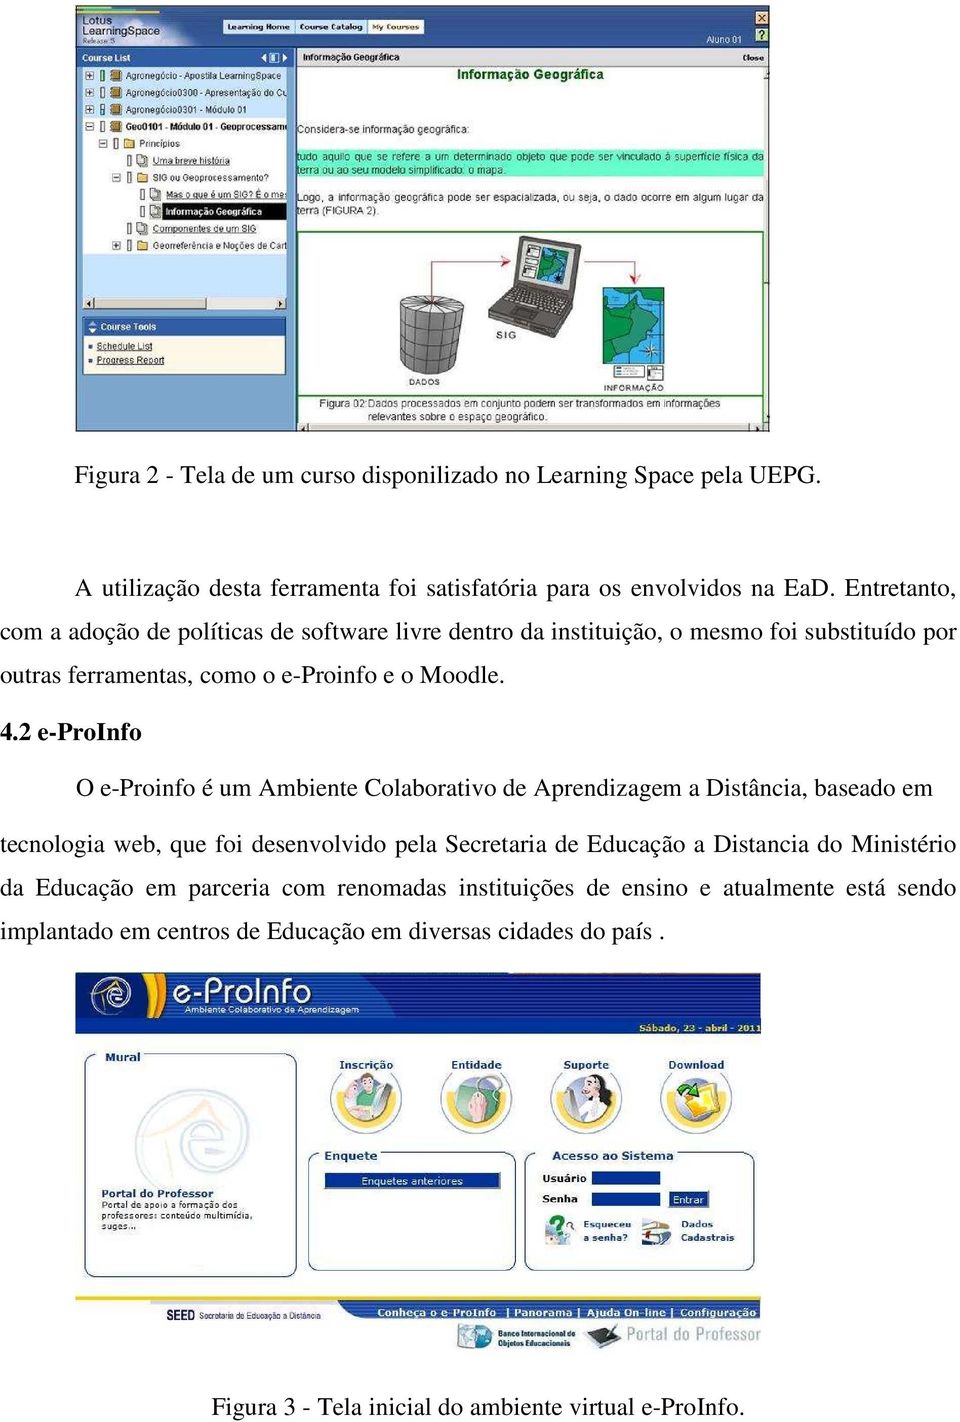 2 e-proinfo O e-proinfo é um Ambiente Colaborativo de Aprendizagem a Distância, baseado em tecnologia web, que foi desenvolvido pela Secretaria de Educação a Distancia do